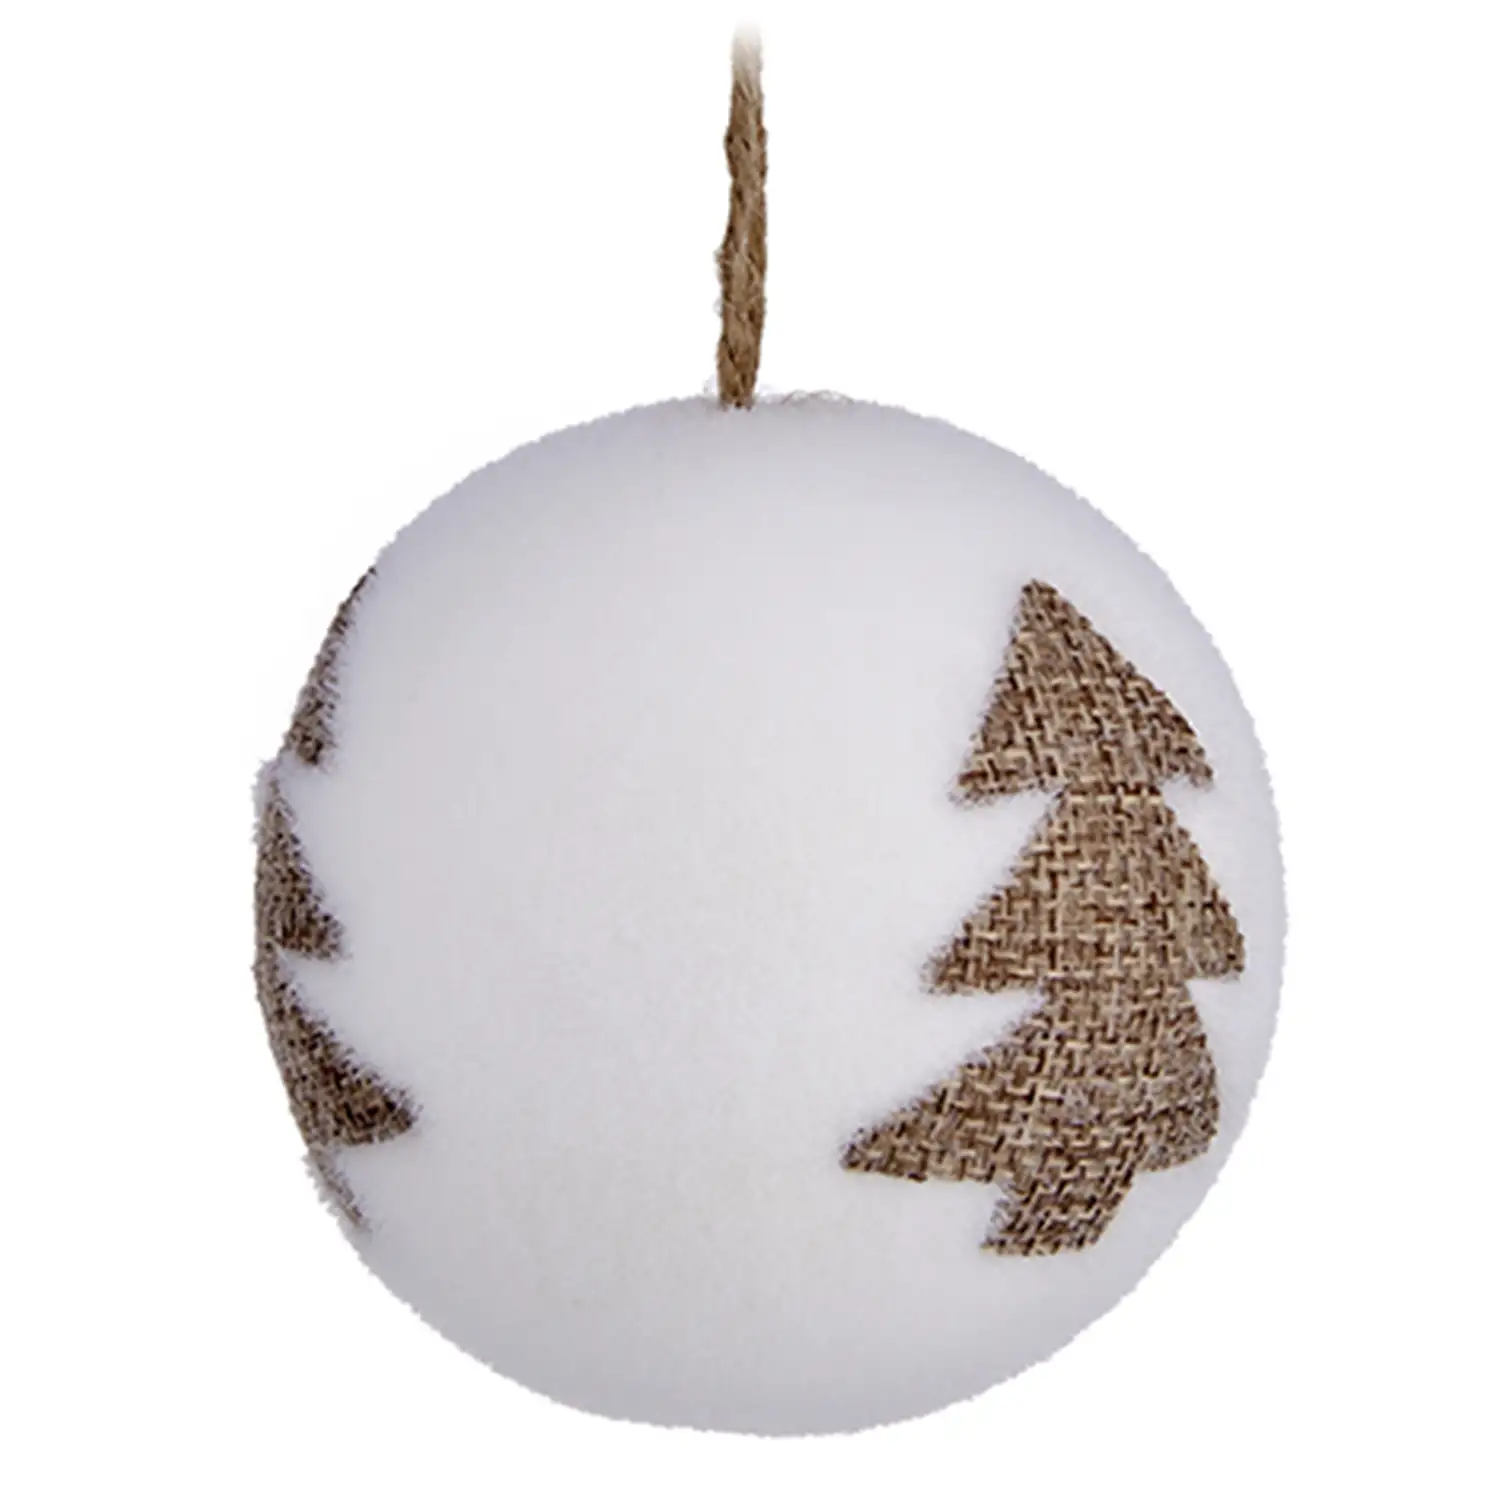 Juego de 3 bolas 8cm blancas de navidad, diseño árbol marrón.